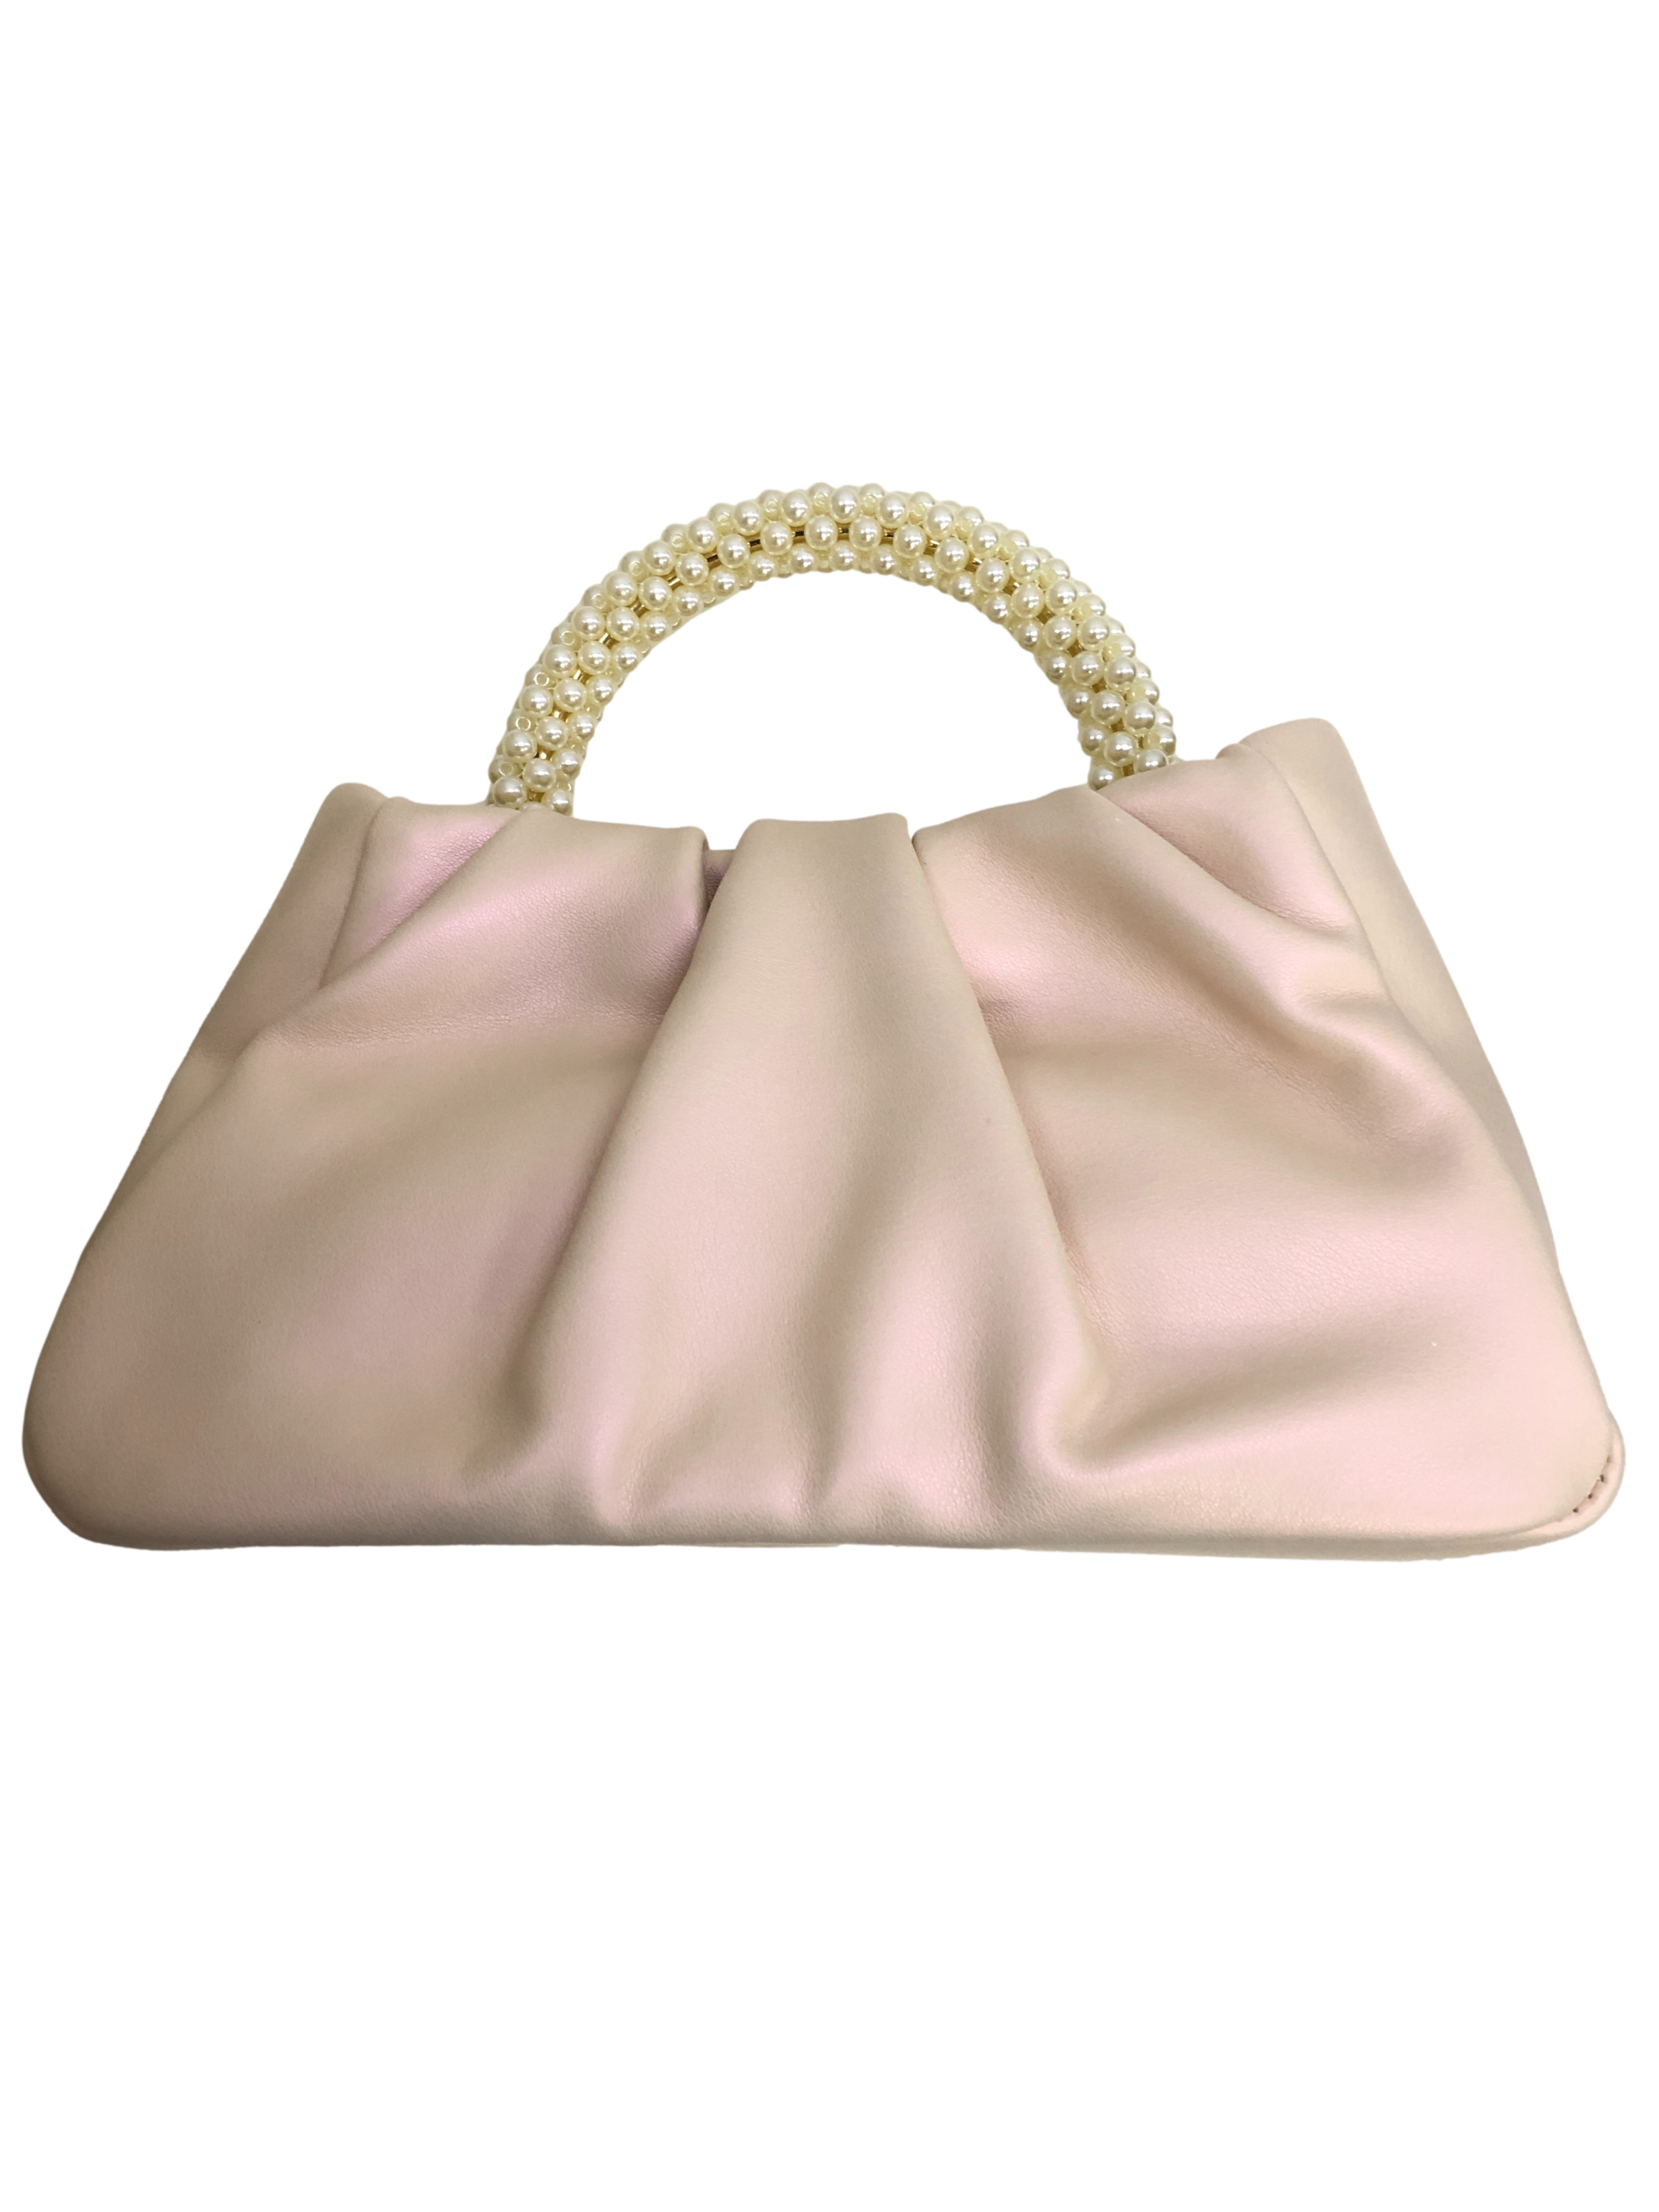 Rose Gold Handbag